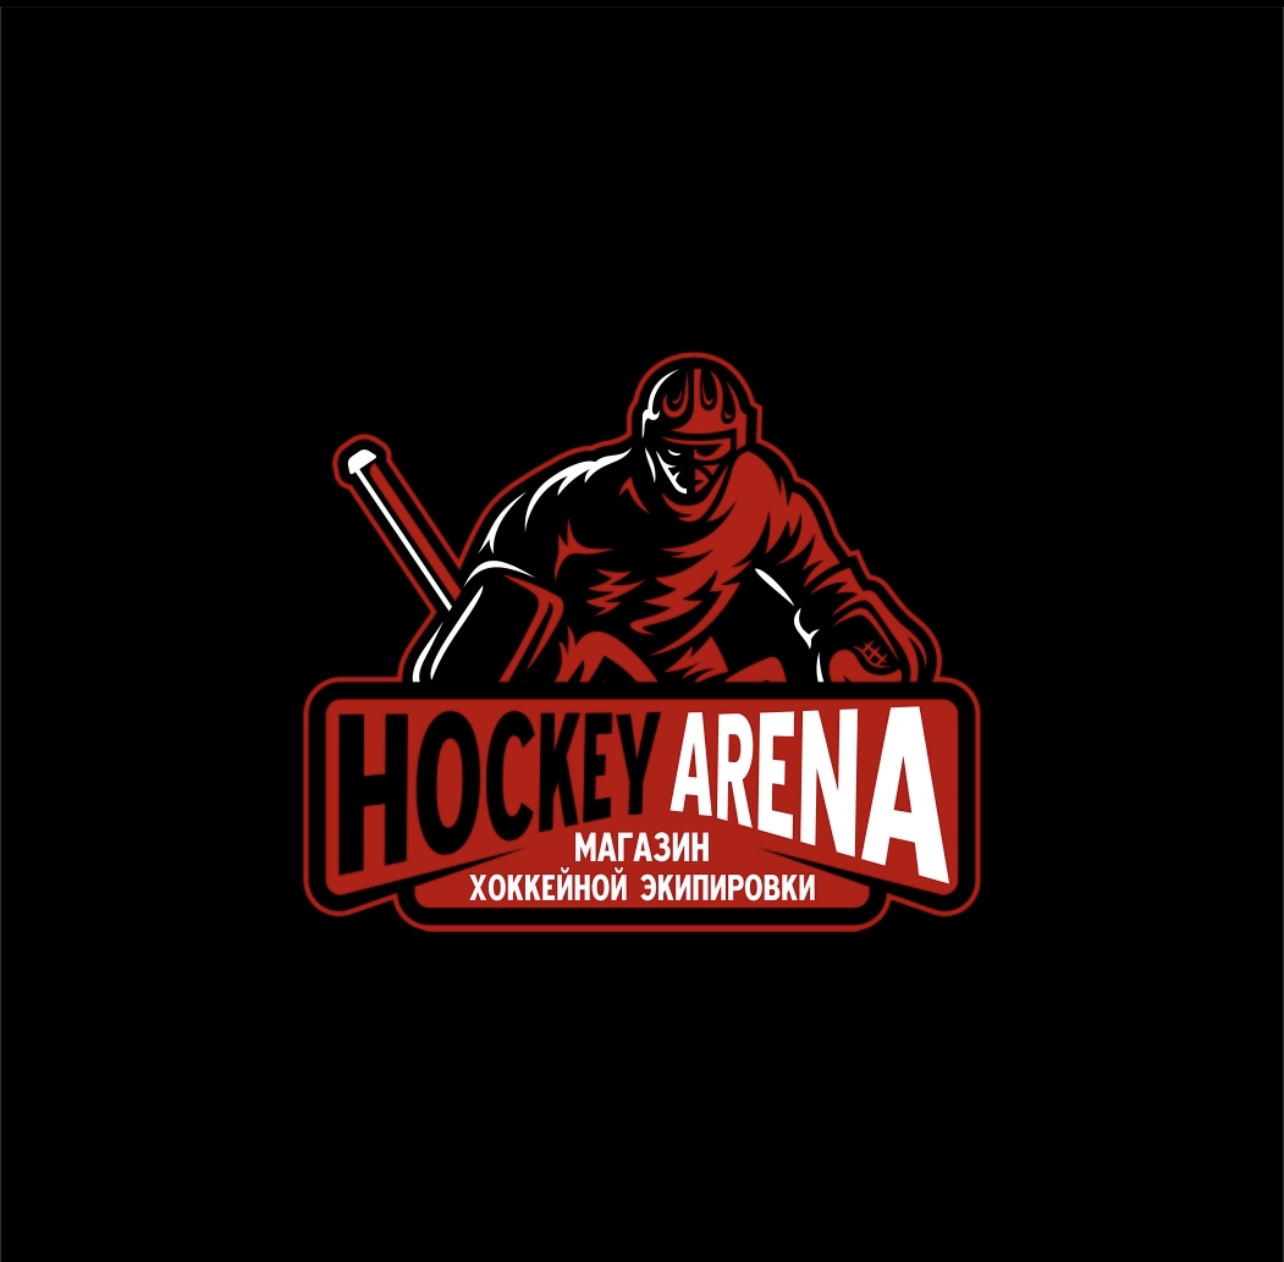 «Hockey Arena» Хоккейная экипировка